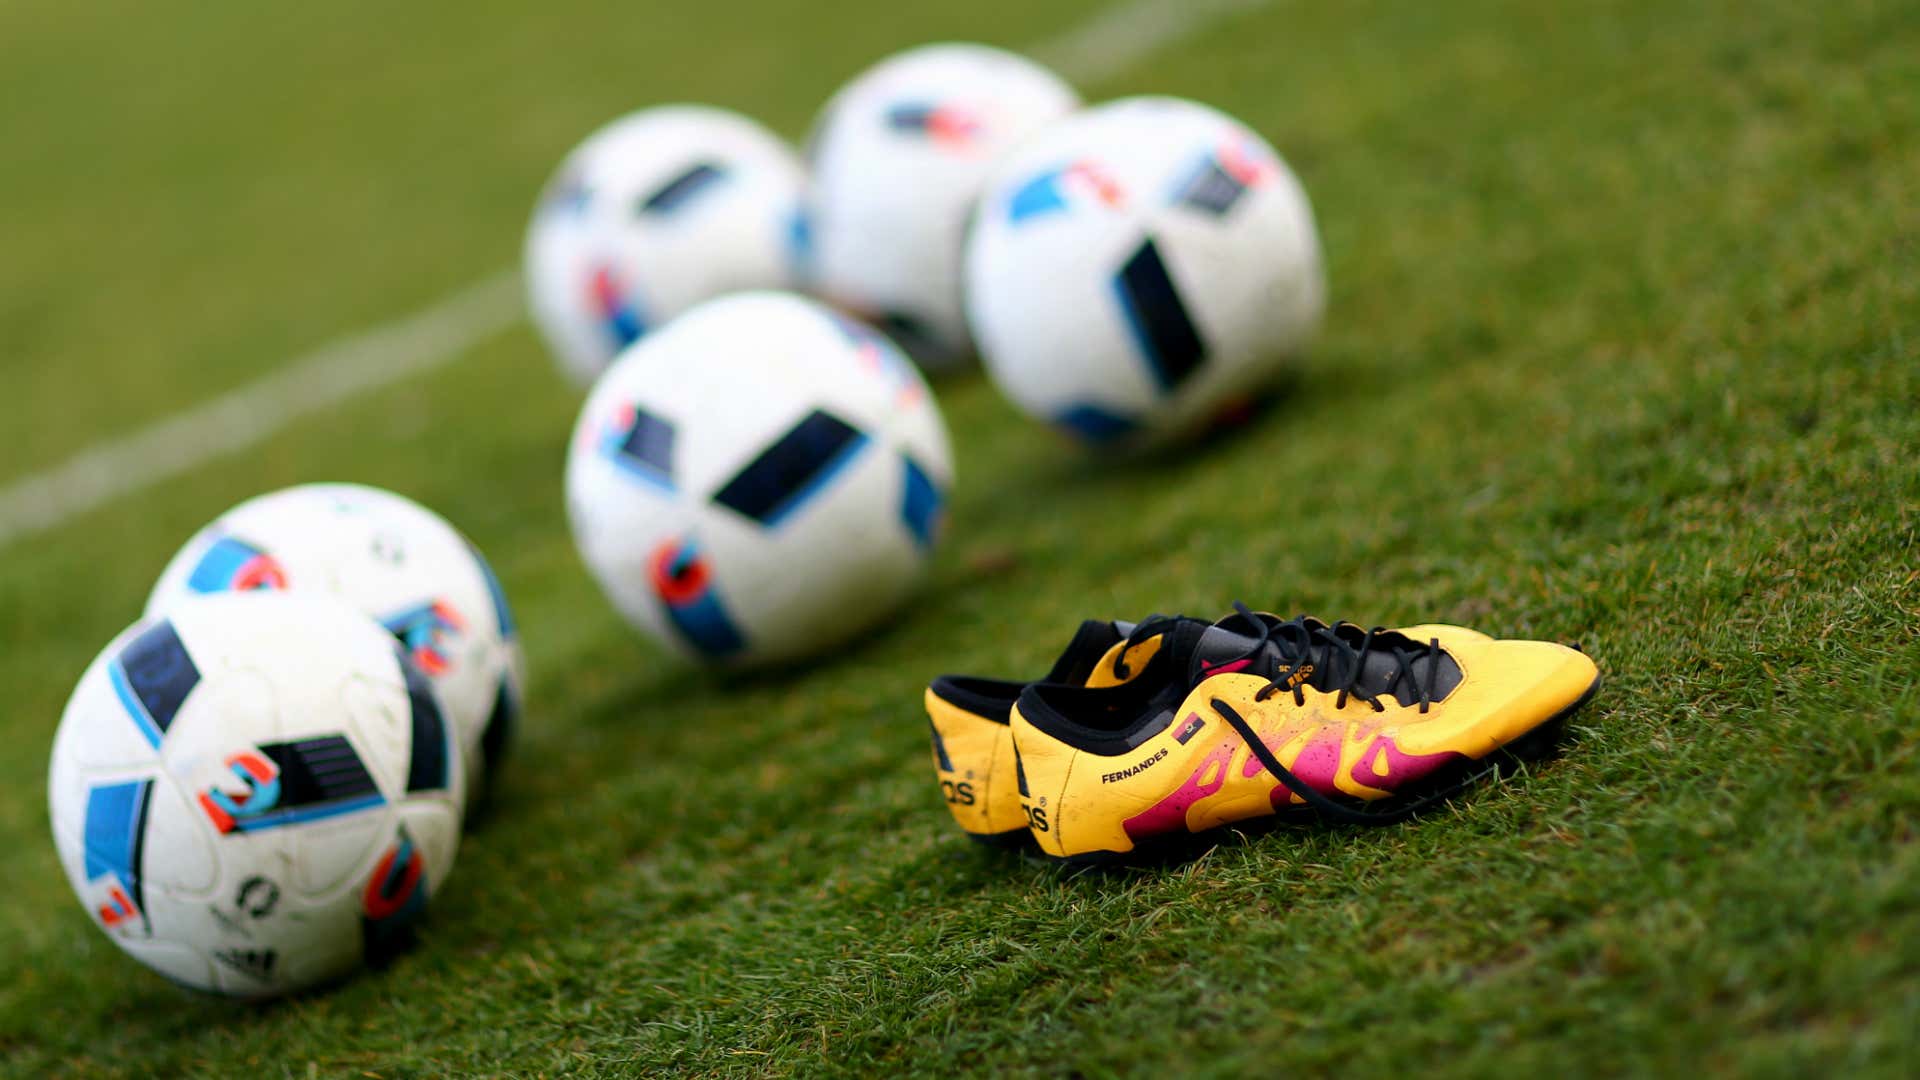 GALERÍA: Las Adidas X de Luis Suárez, las Nike Mercurial de Cristiano Ronaldo y las botas más del año | Goal.com